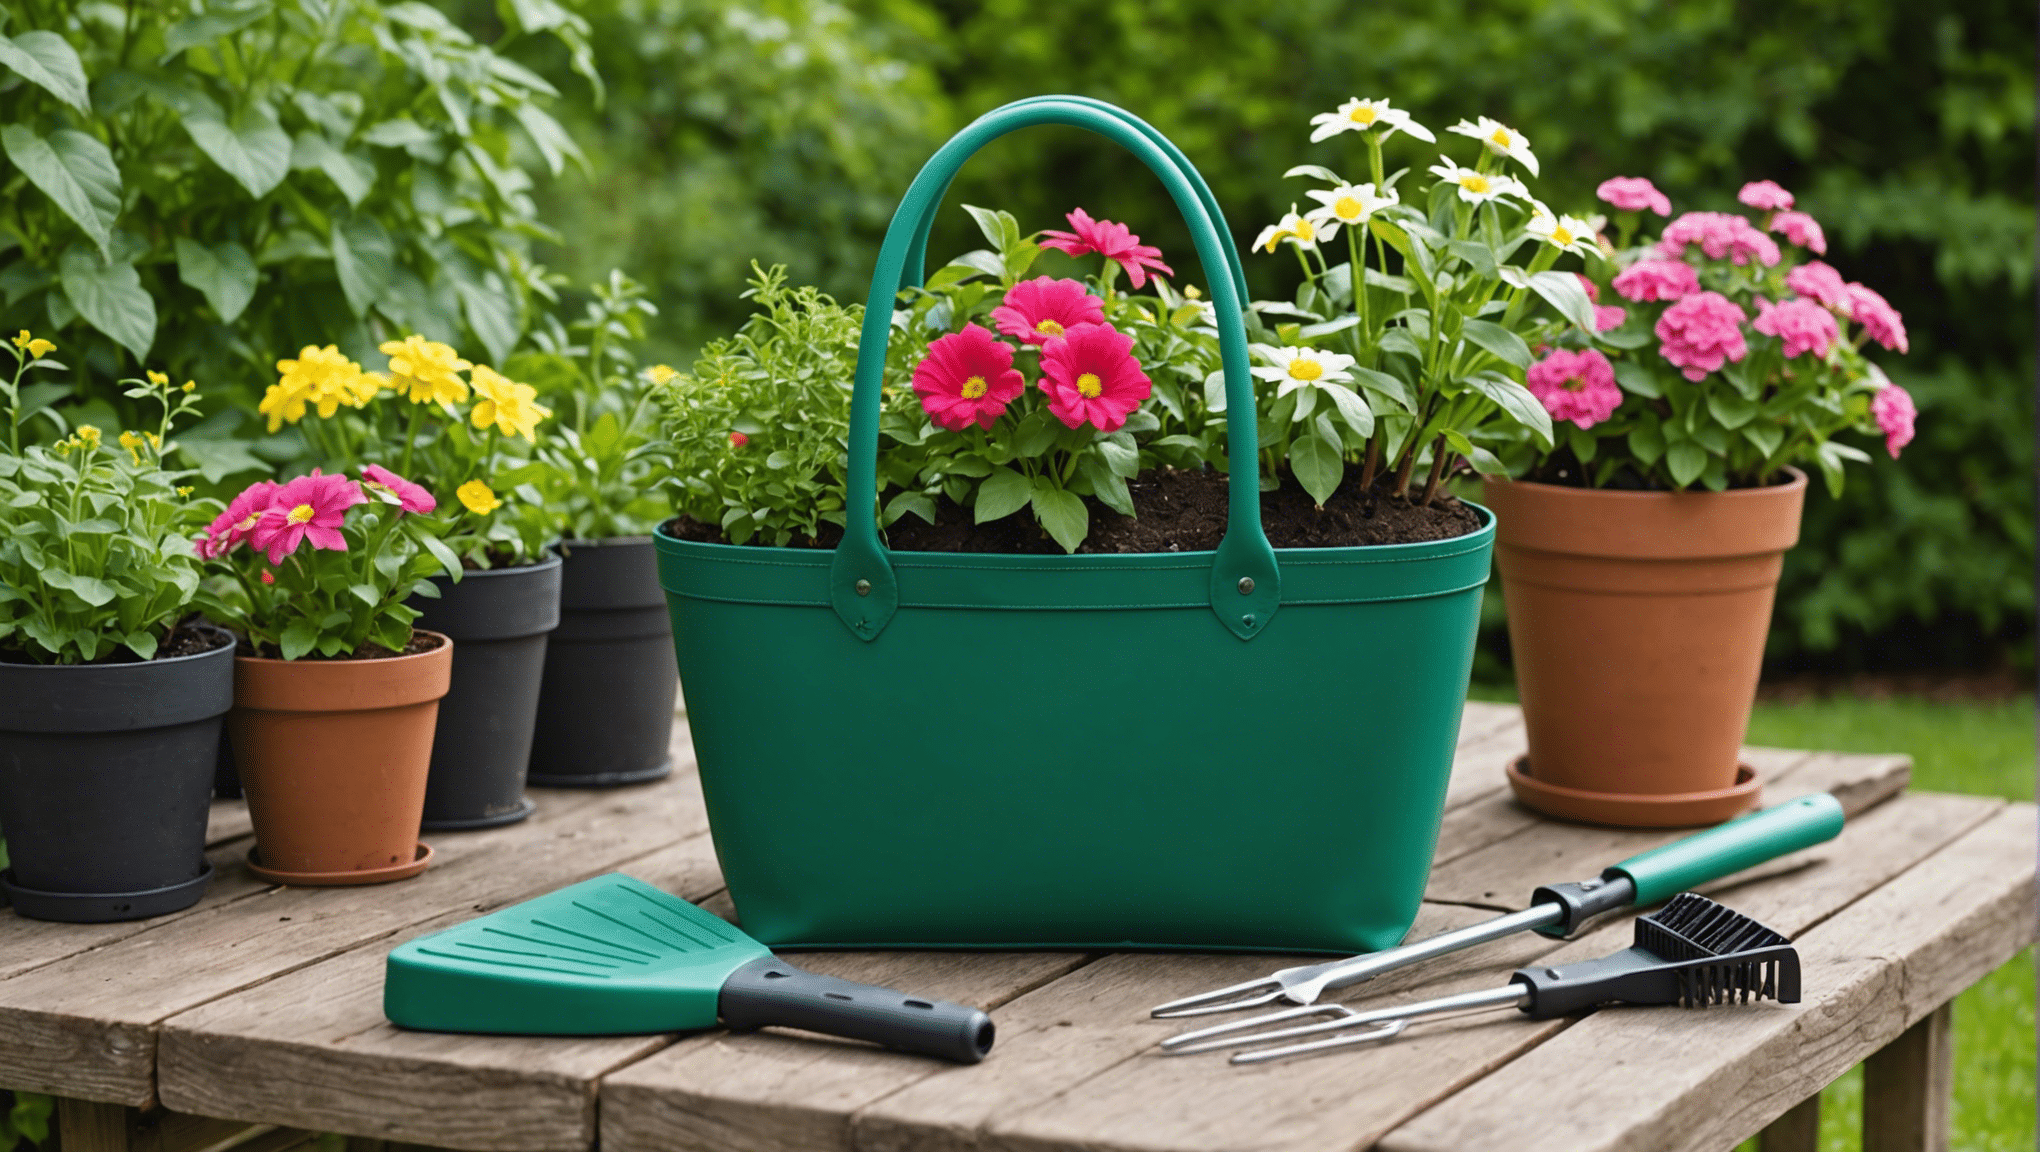 Leer meer over de onmisbare kenmerken van een tuintas en vind de perfecte tas voor uw tuinierbehoeften. ontdek duurzame materialen, voldoende opbergruimte en een handig ontwerp voor een heerlijke tuinierervaring.